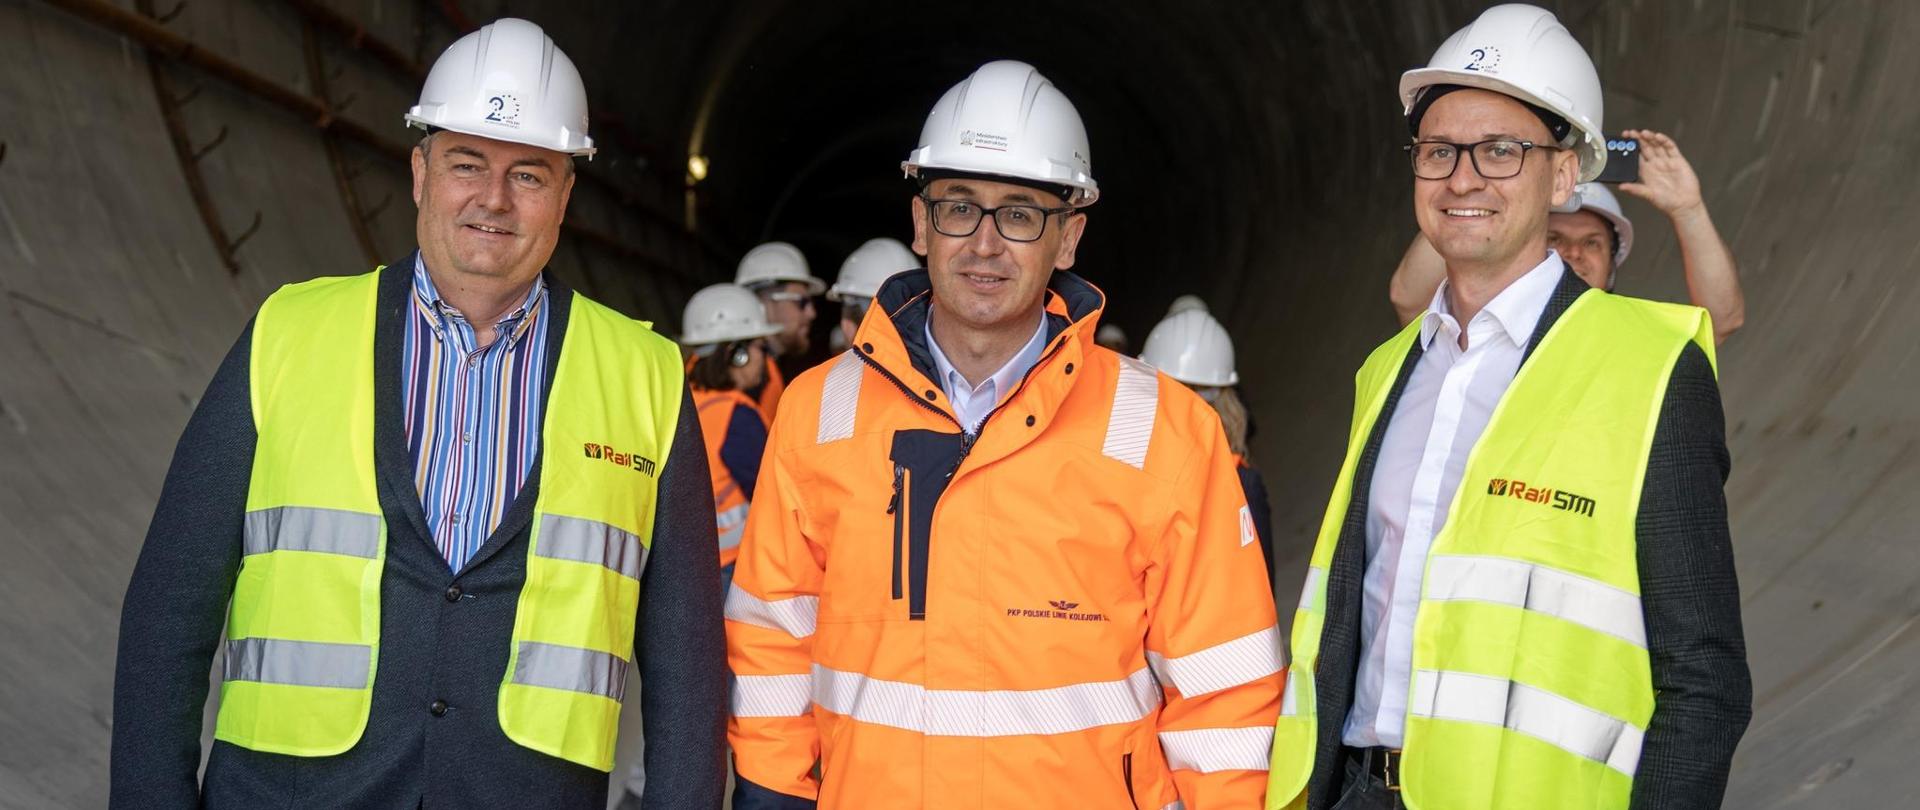 Minister infrastruktury Dariusz Klimczak podczas wizyty na budowie średnicowego tunelu kolejowego w Łodzi